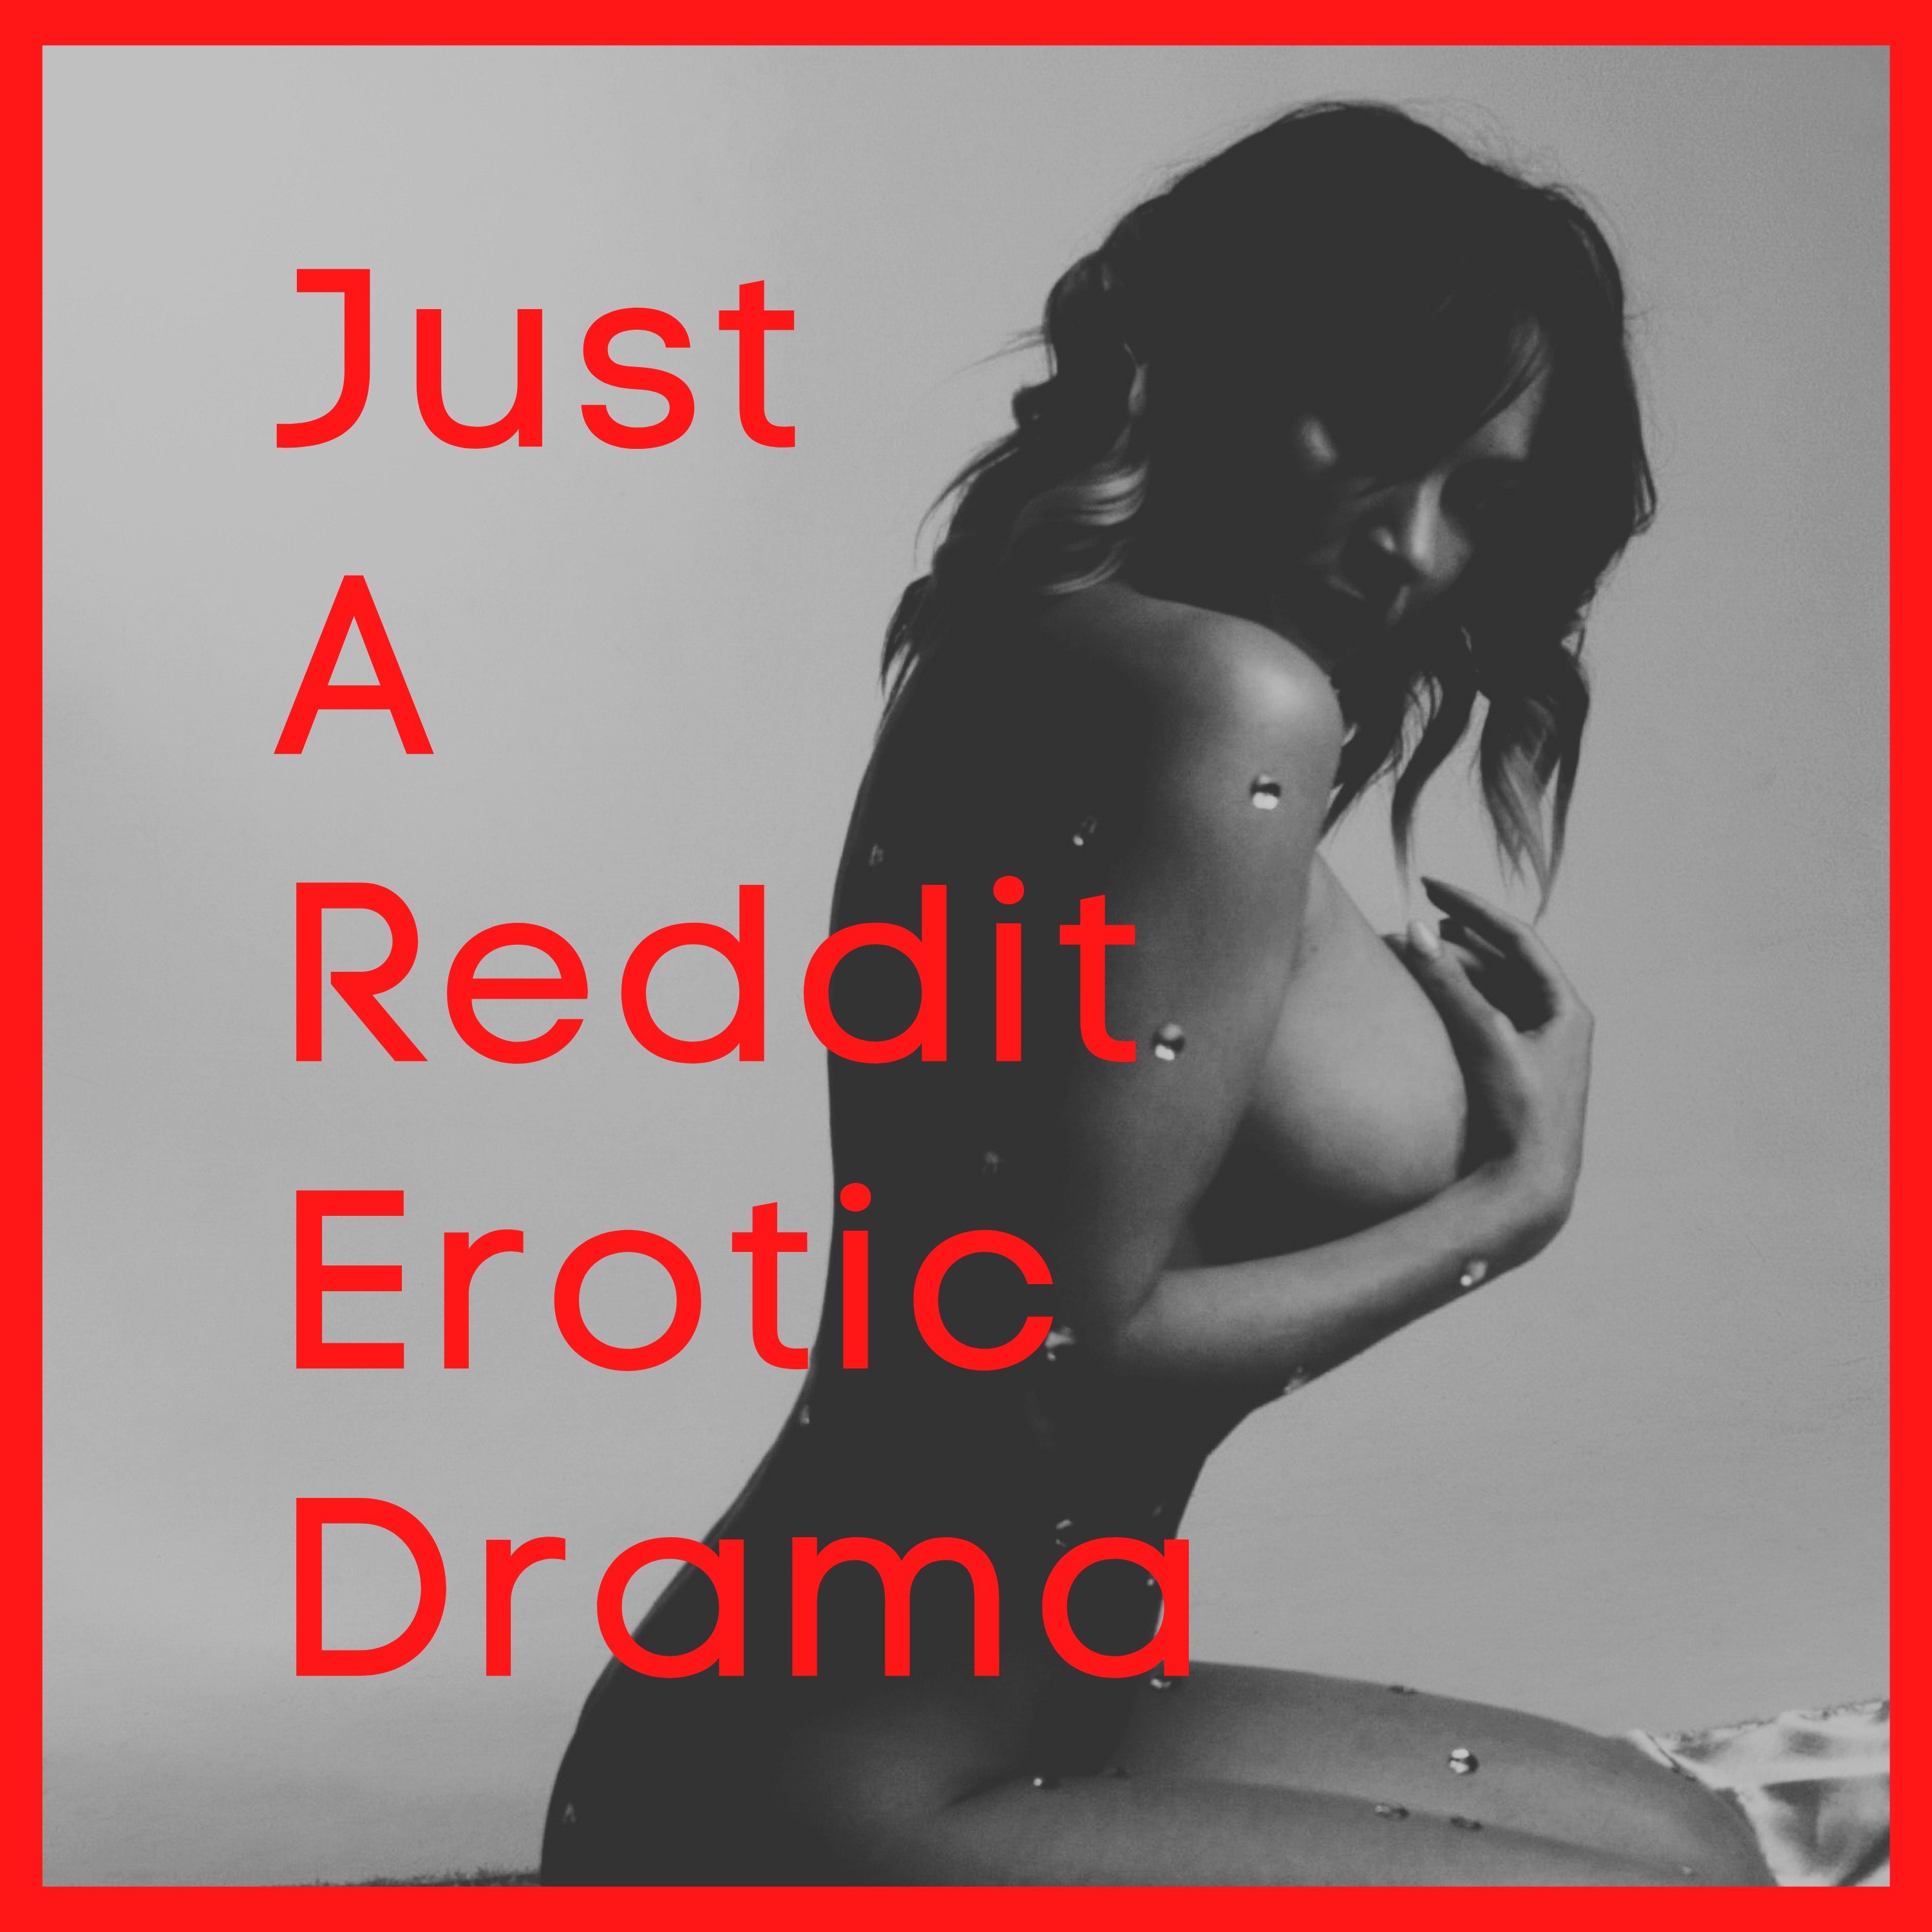 Erotic sex drama